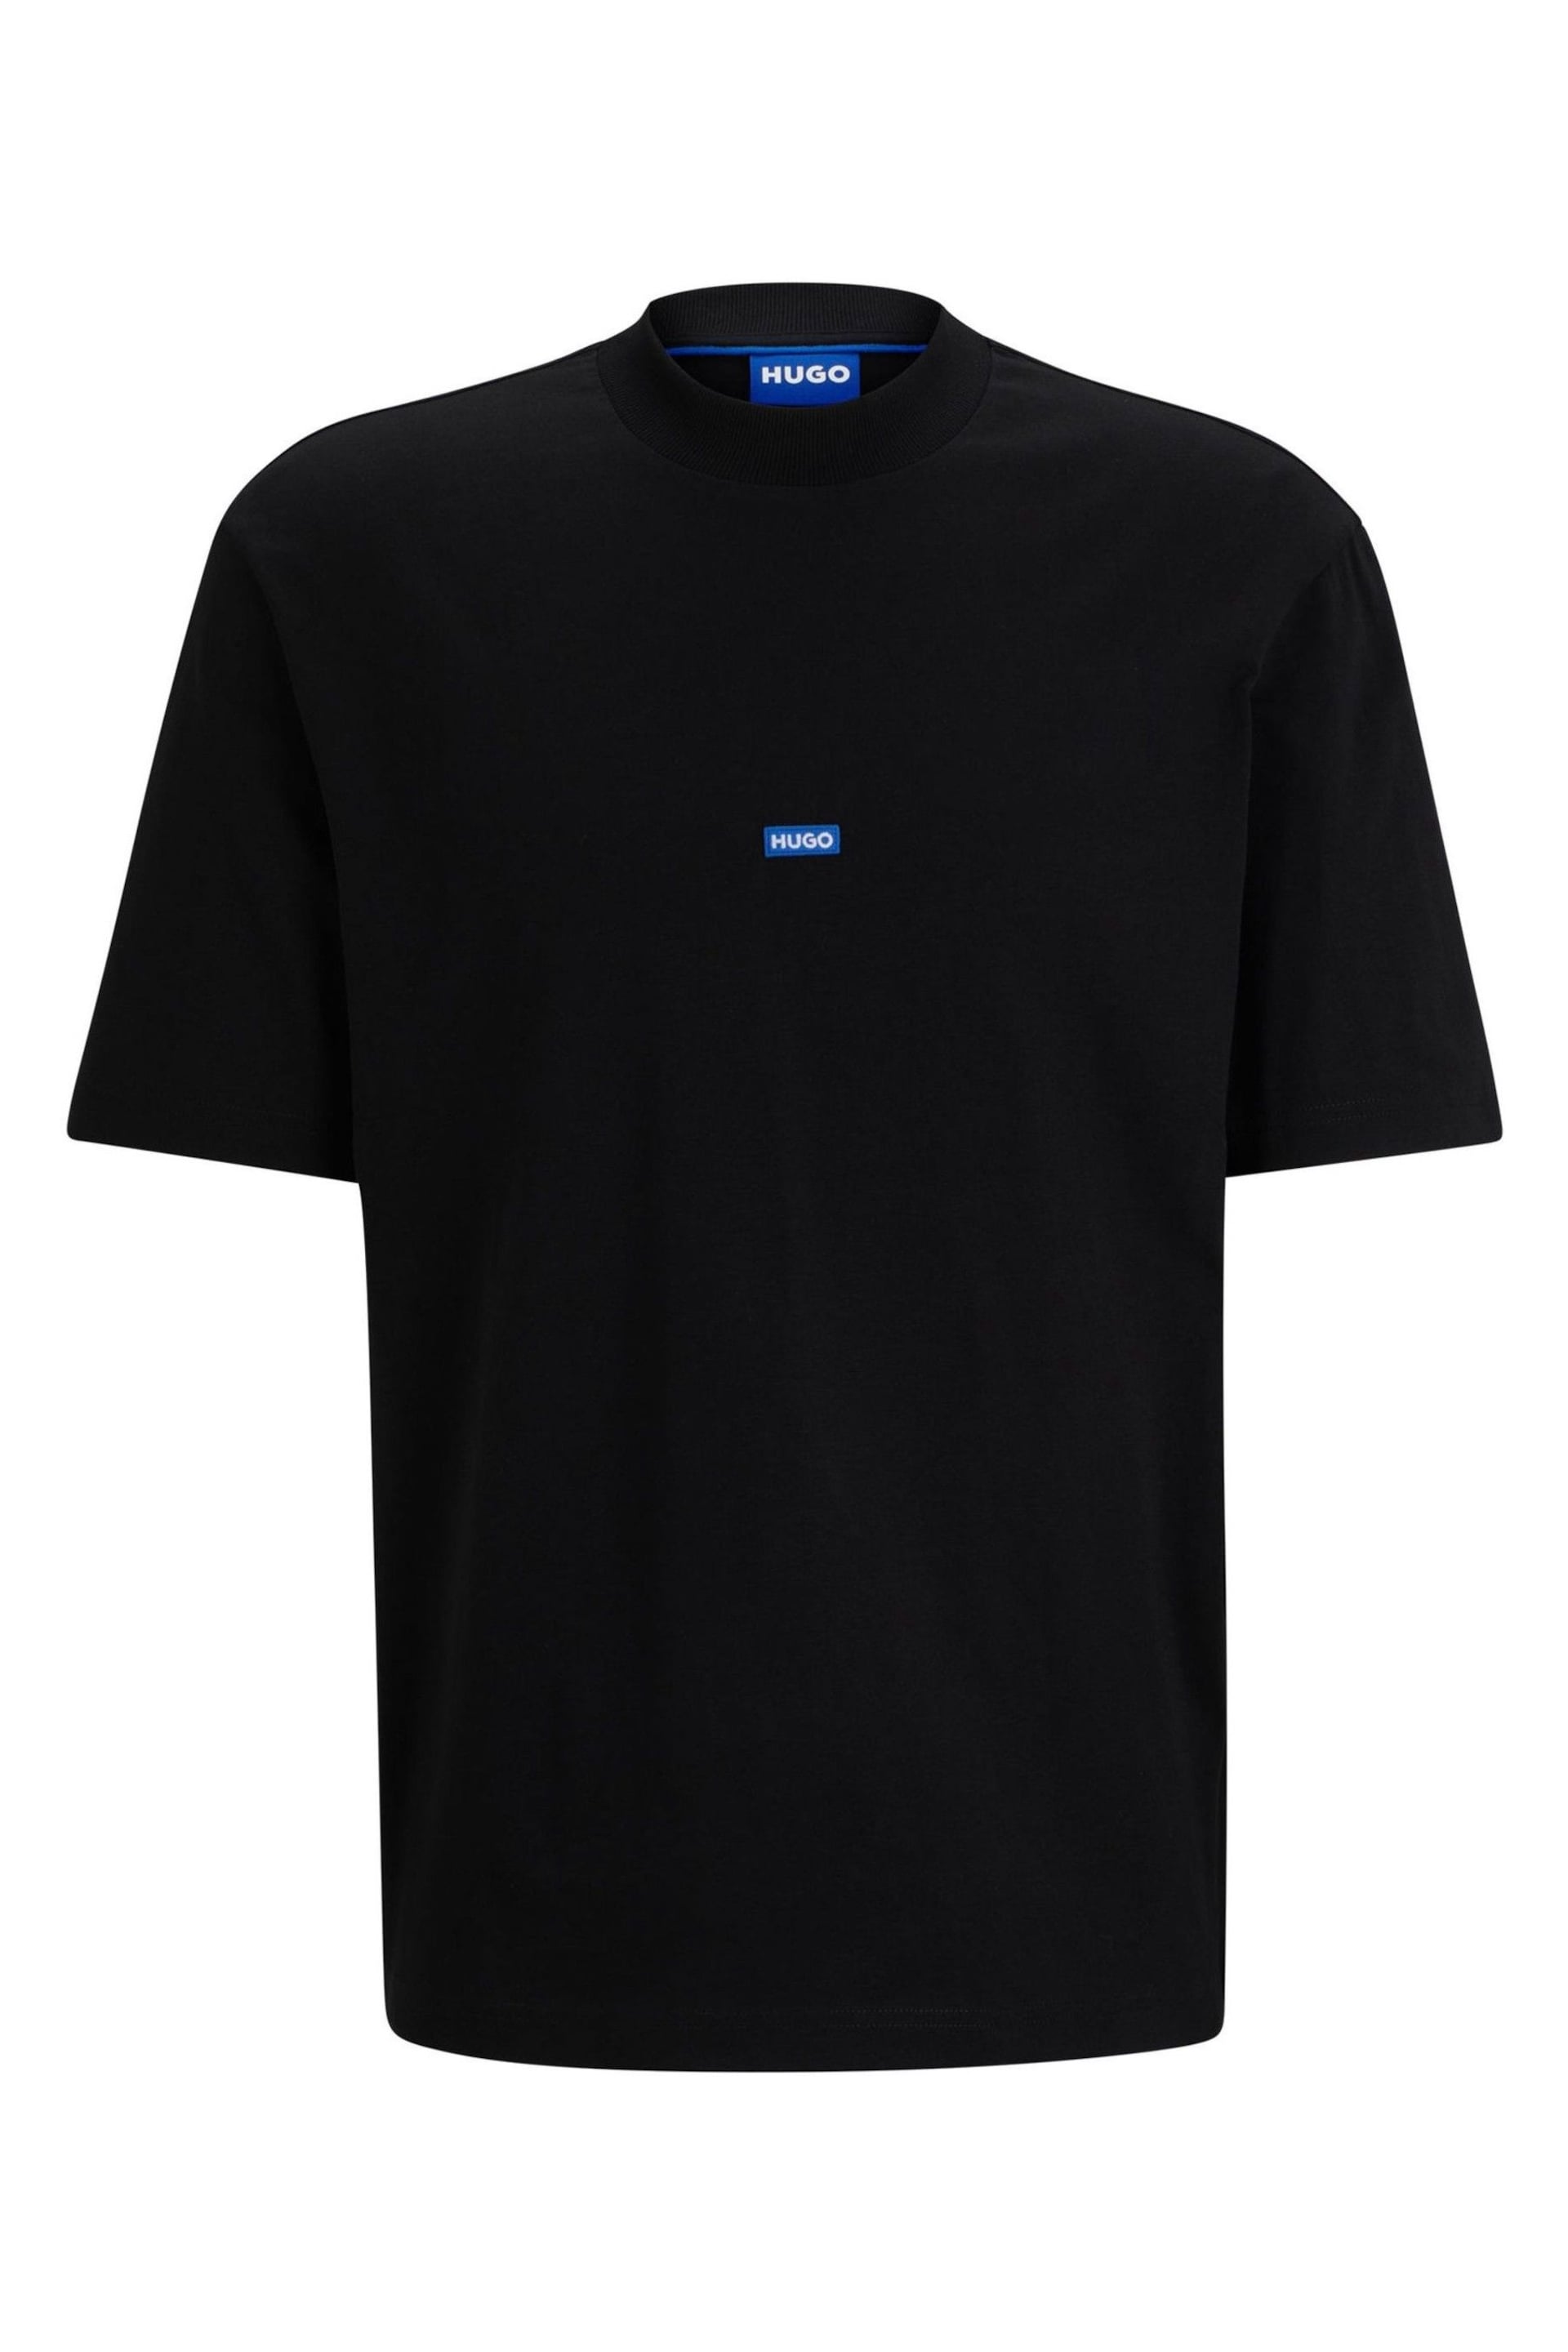 HUGO Blue Oversize Logo Patch T-Shirt - Image 5 of 5